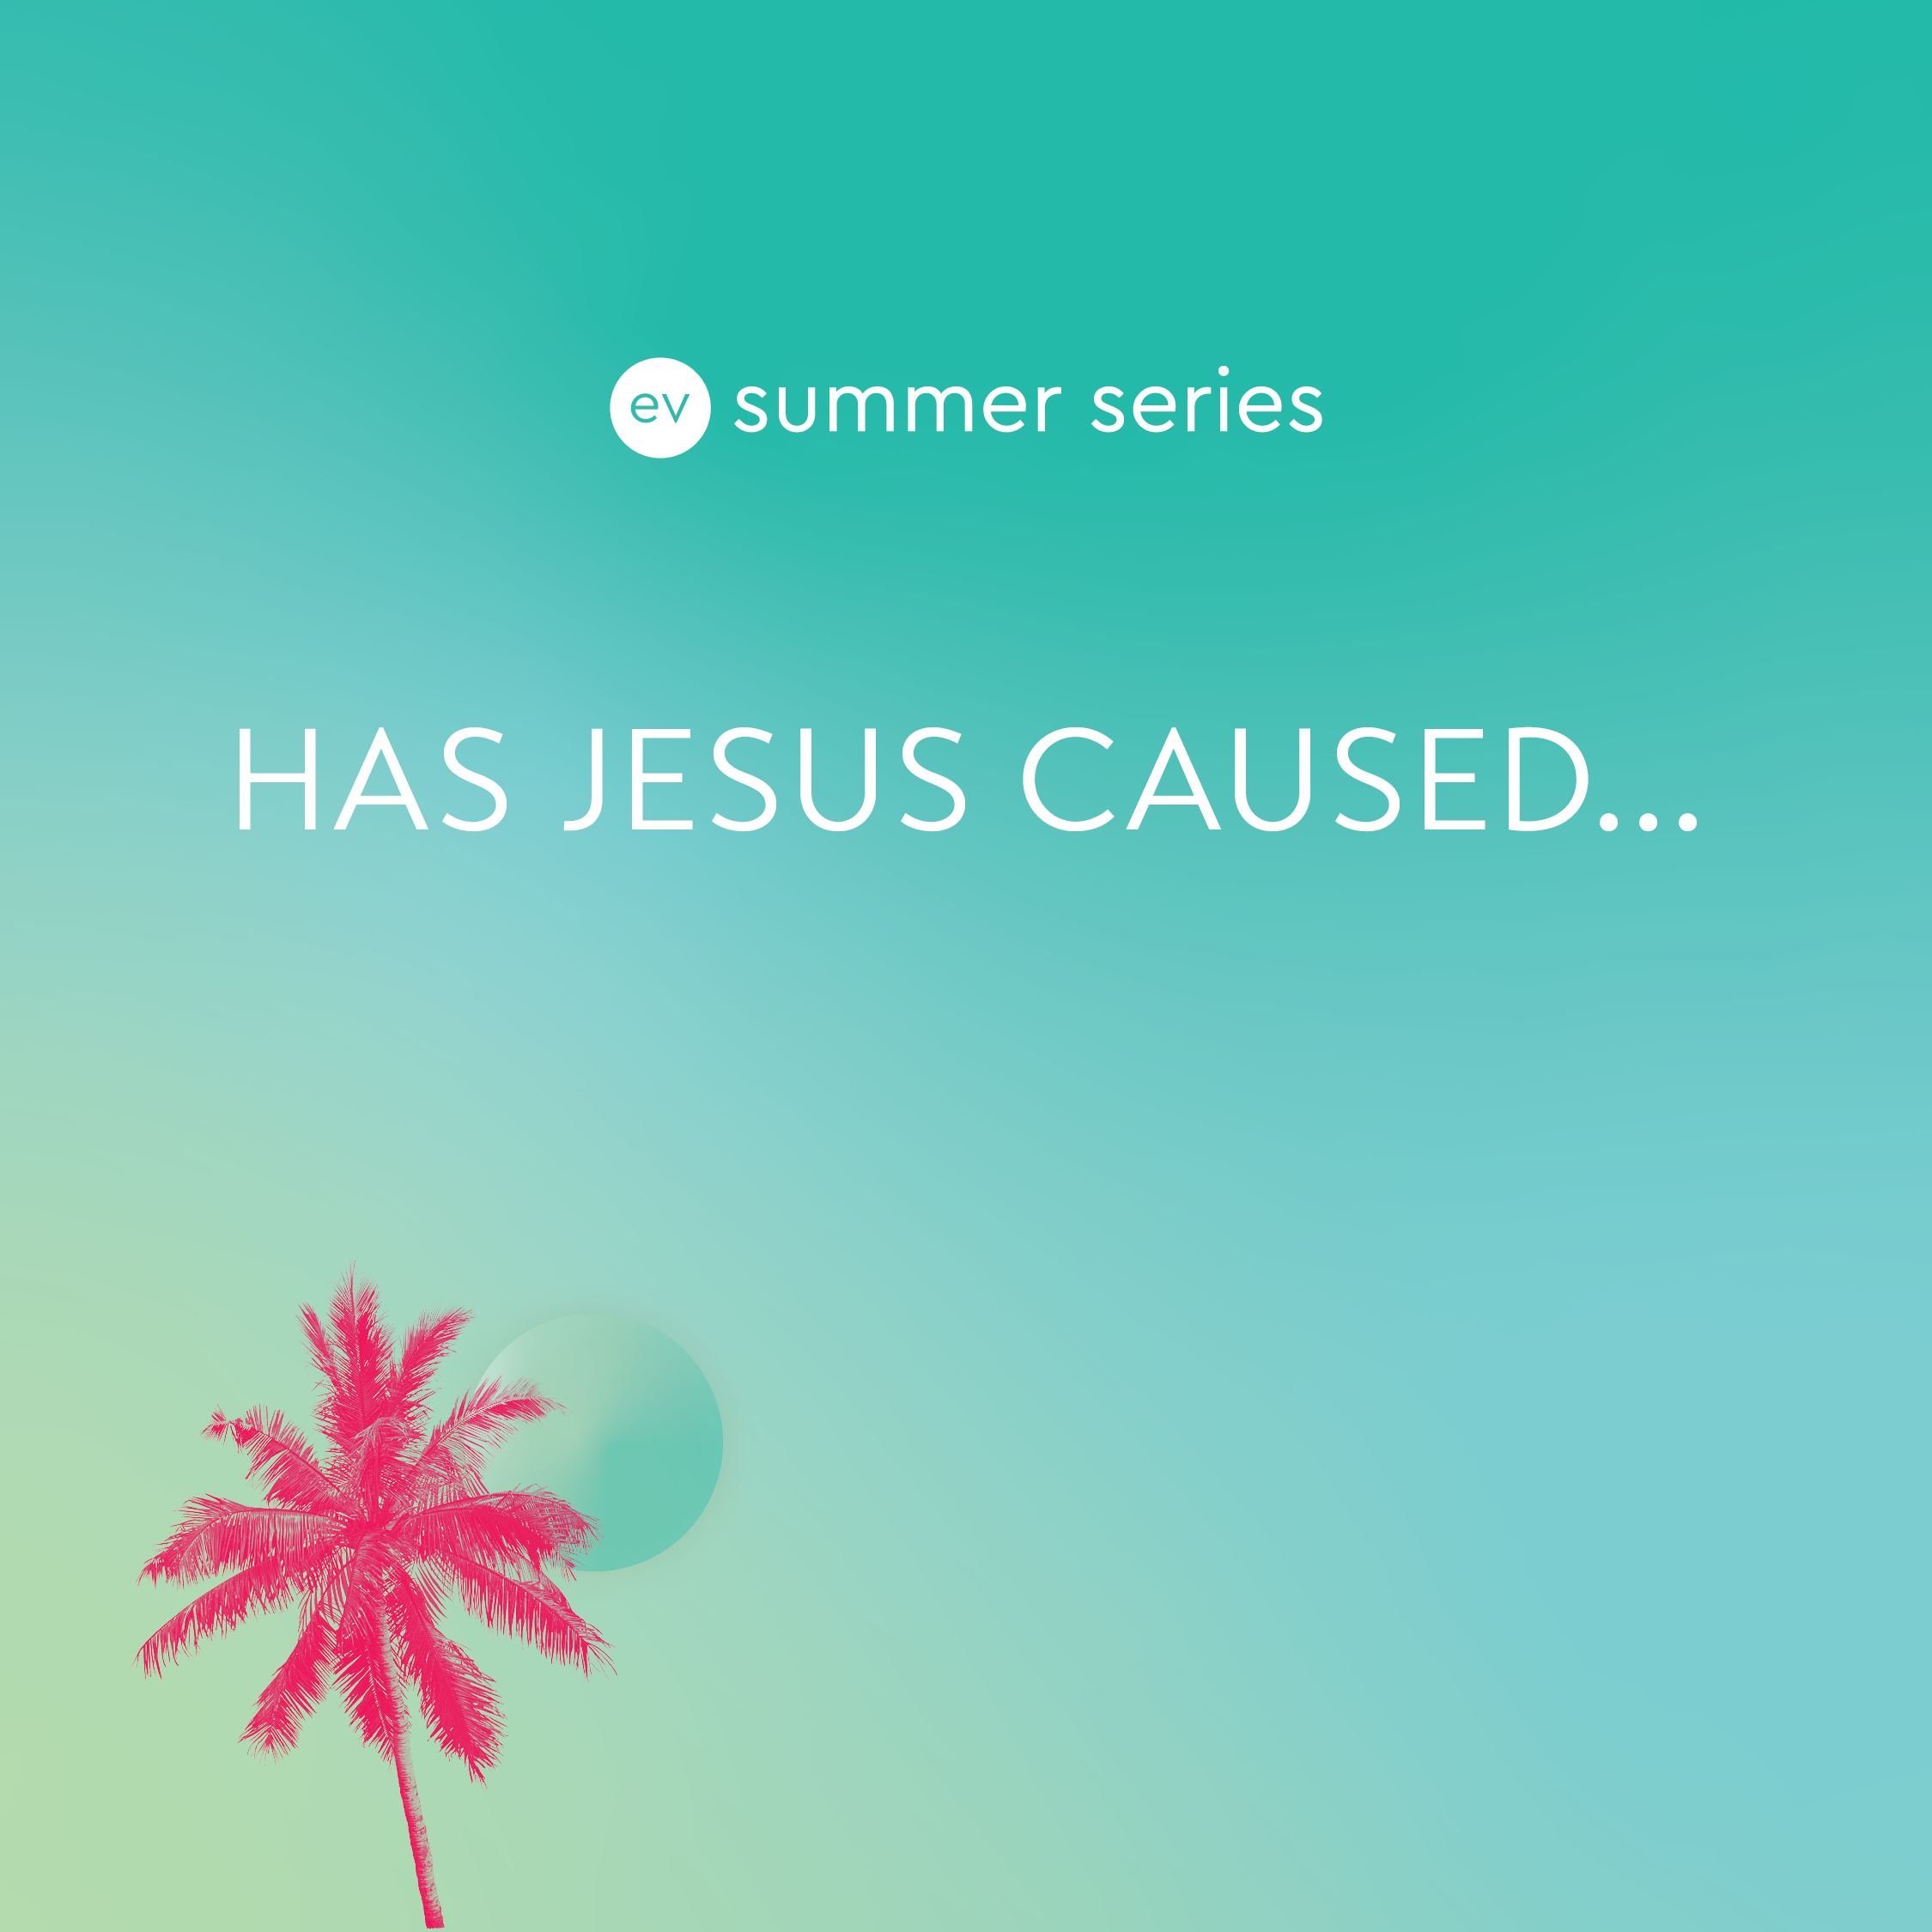 Has Jesus caused...